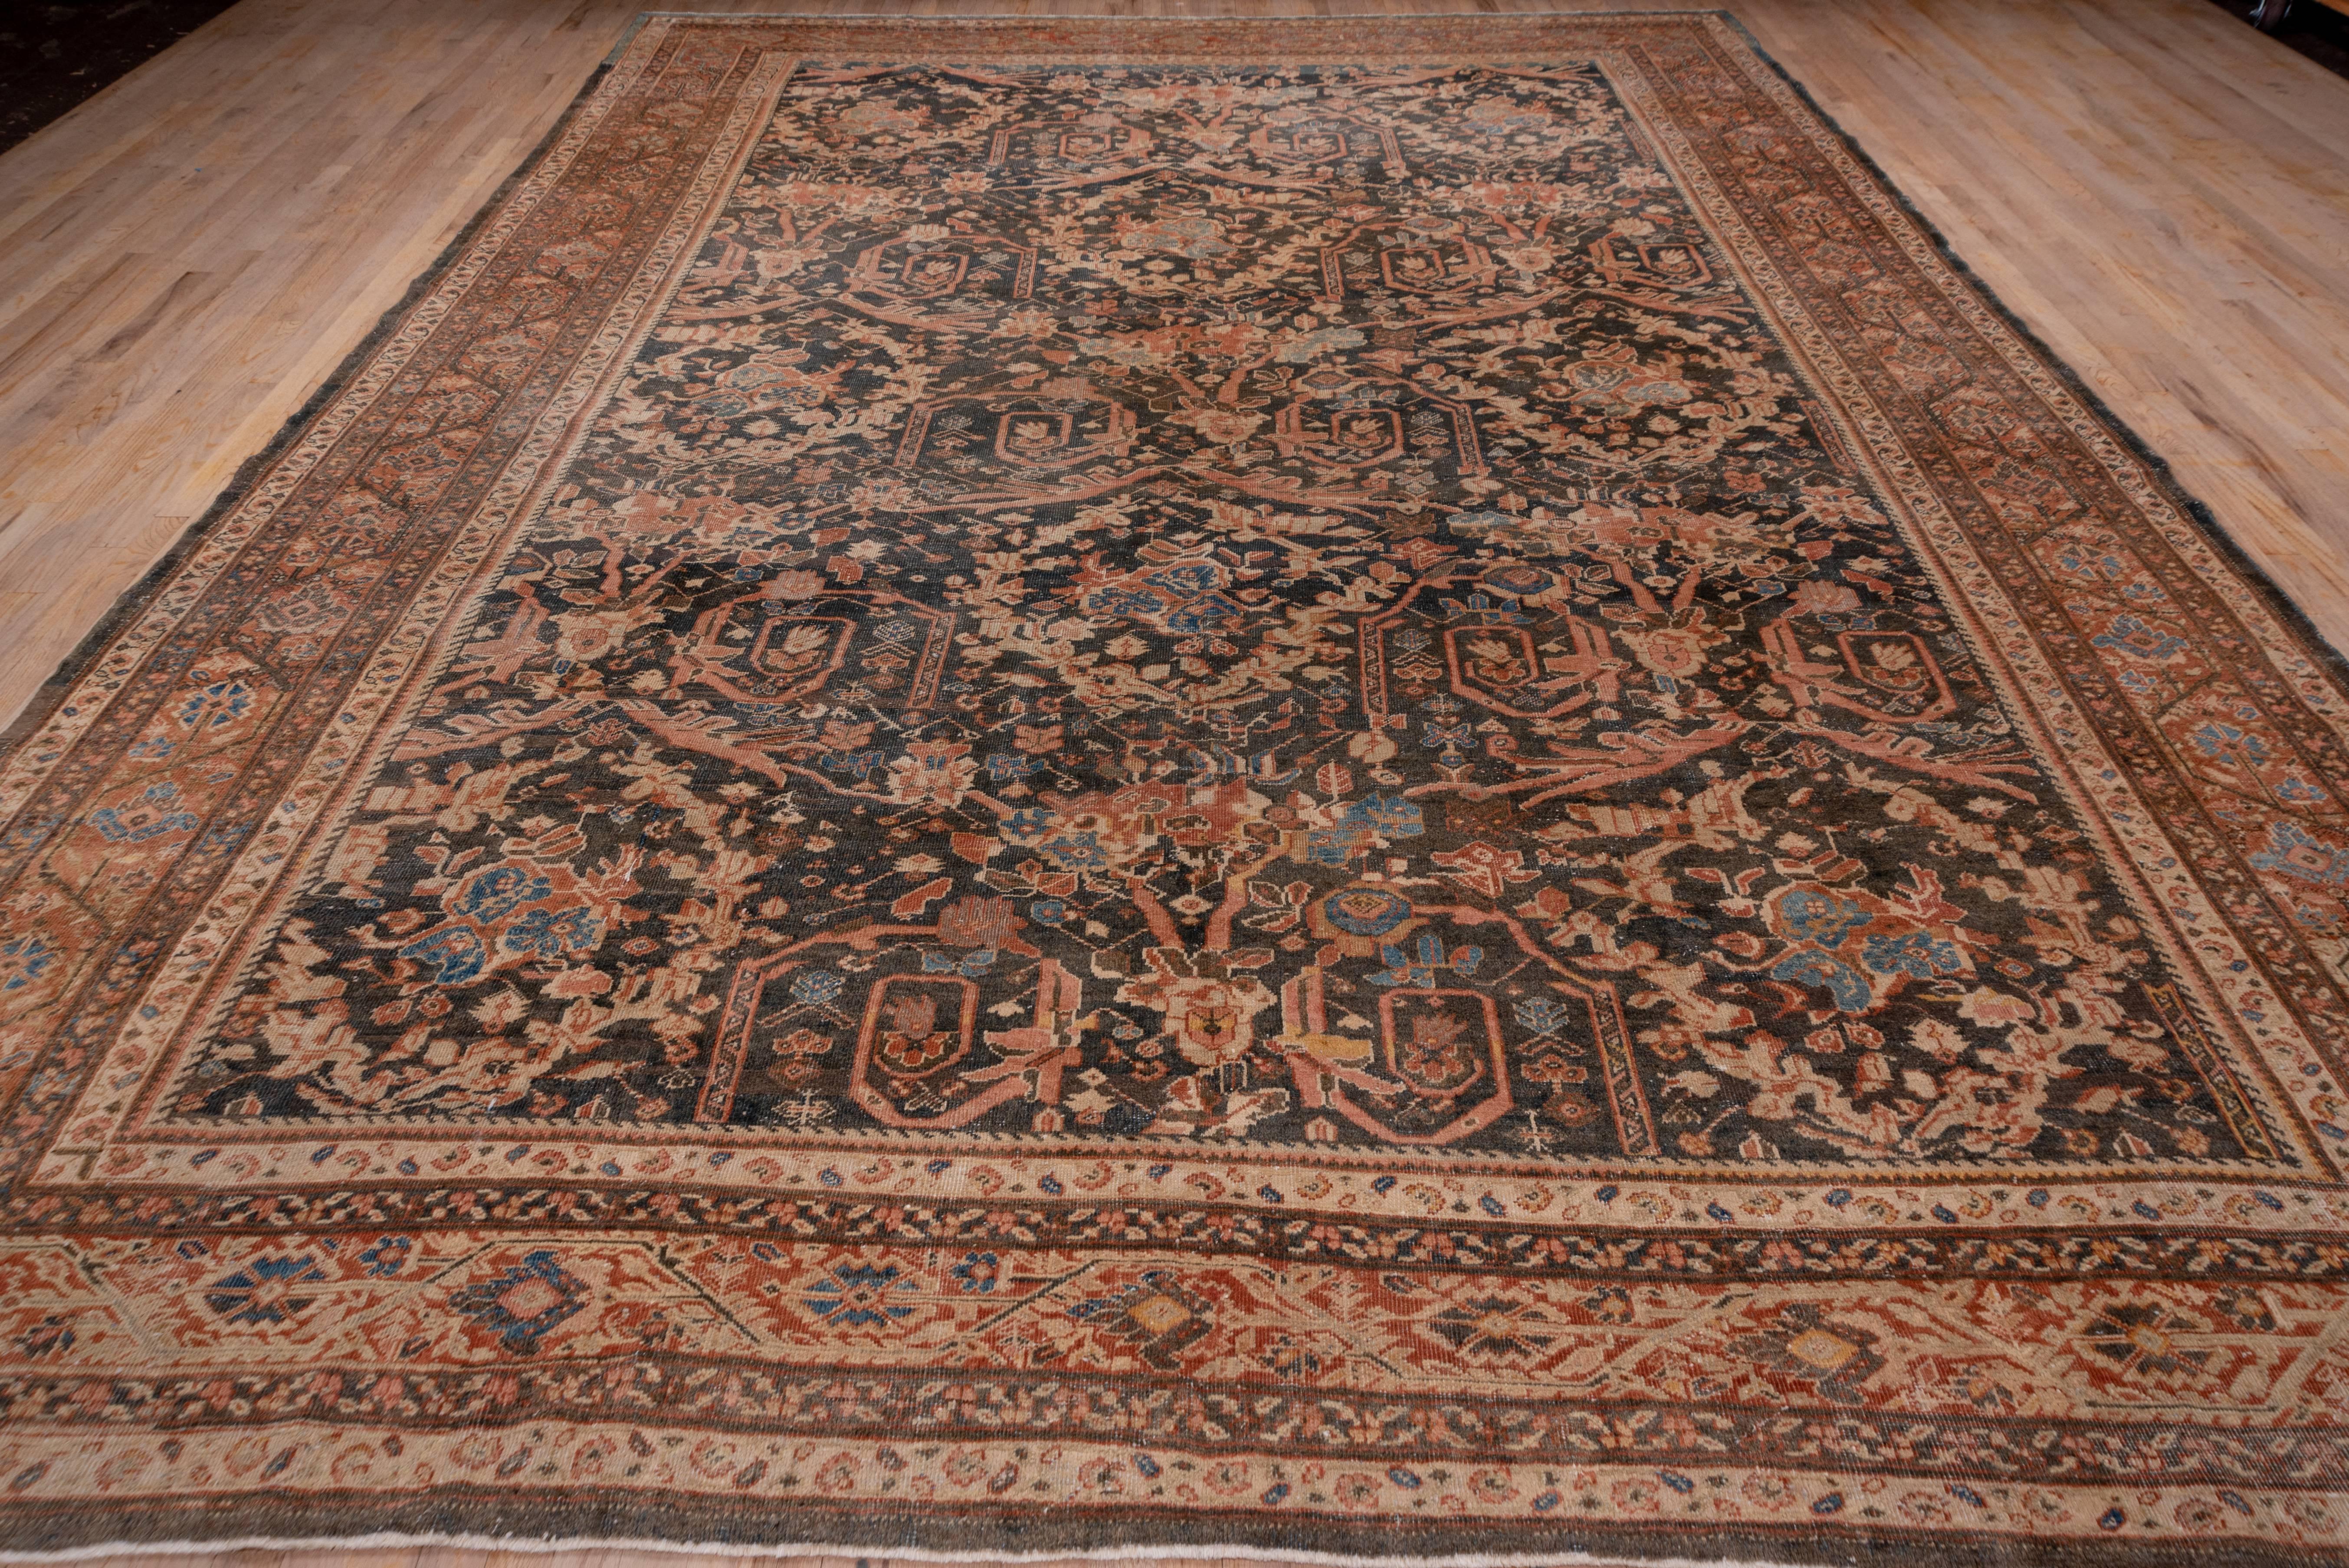 Le champ brun olive de ce tapis antique de l'ouest de la Perse présente un motif Mustafi de feuilles enroulées, de couronnes d'acanthe brisées et de palmettes européennes. La bordure abrasive brun clair présente un motif caractéristique de la